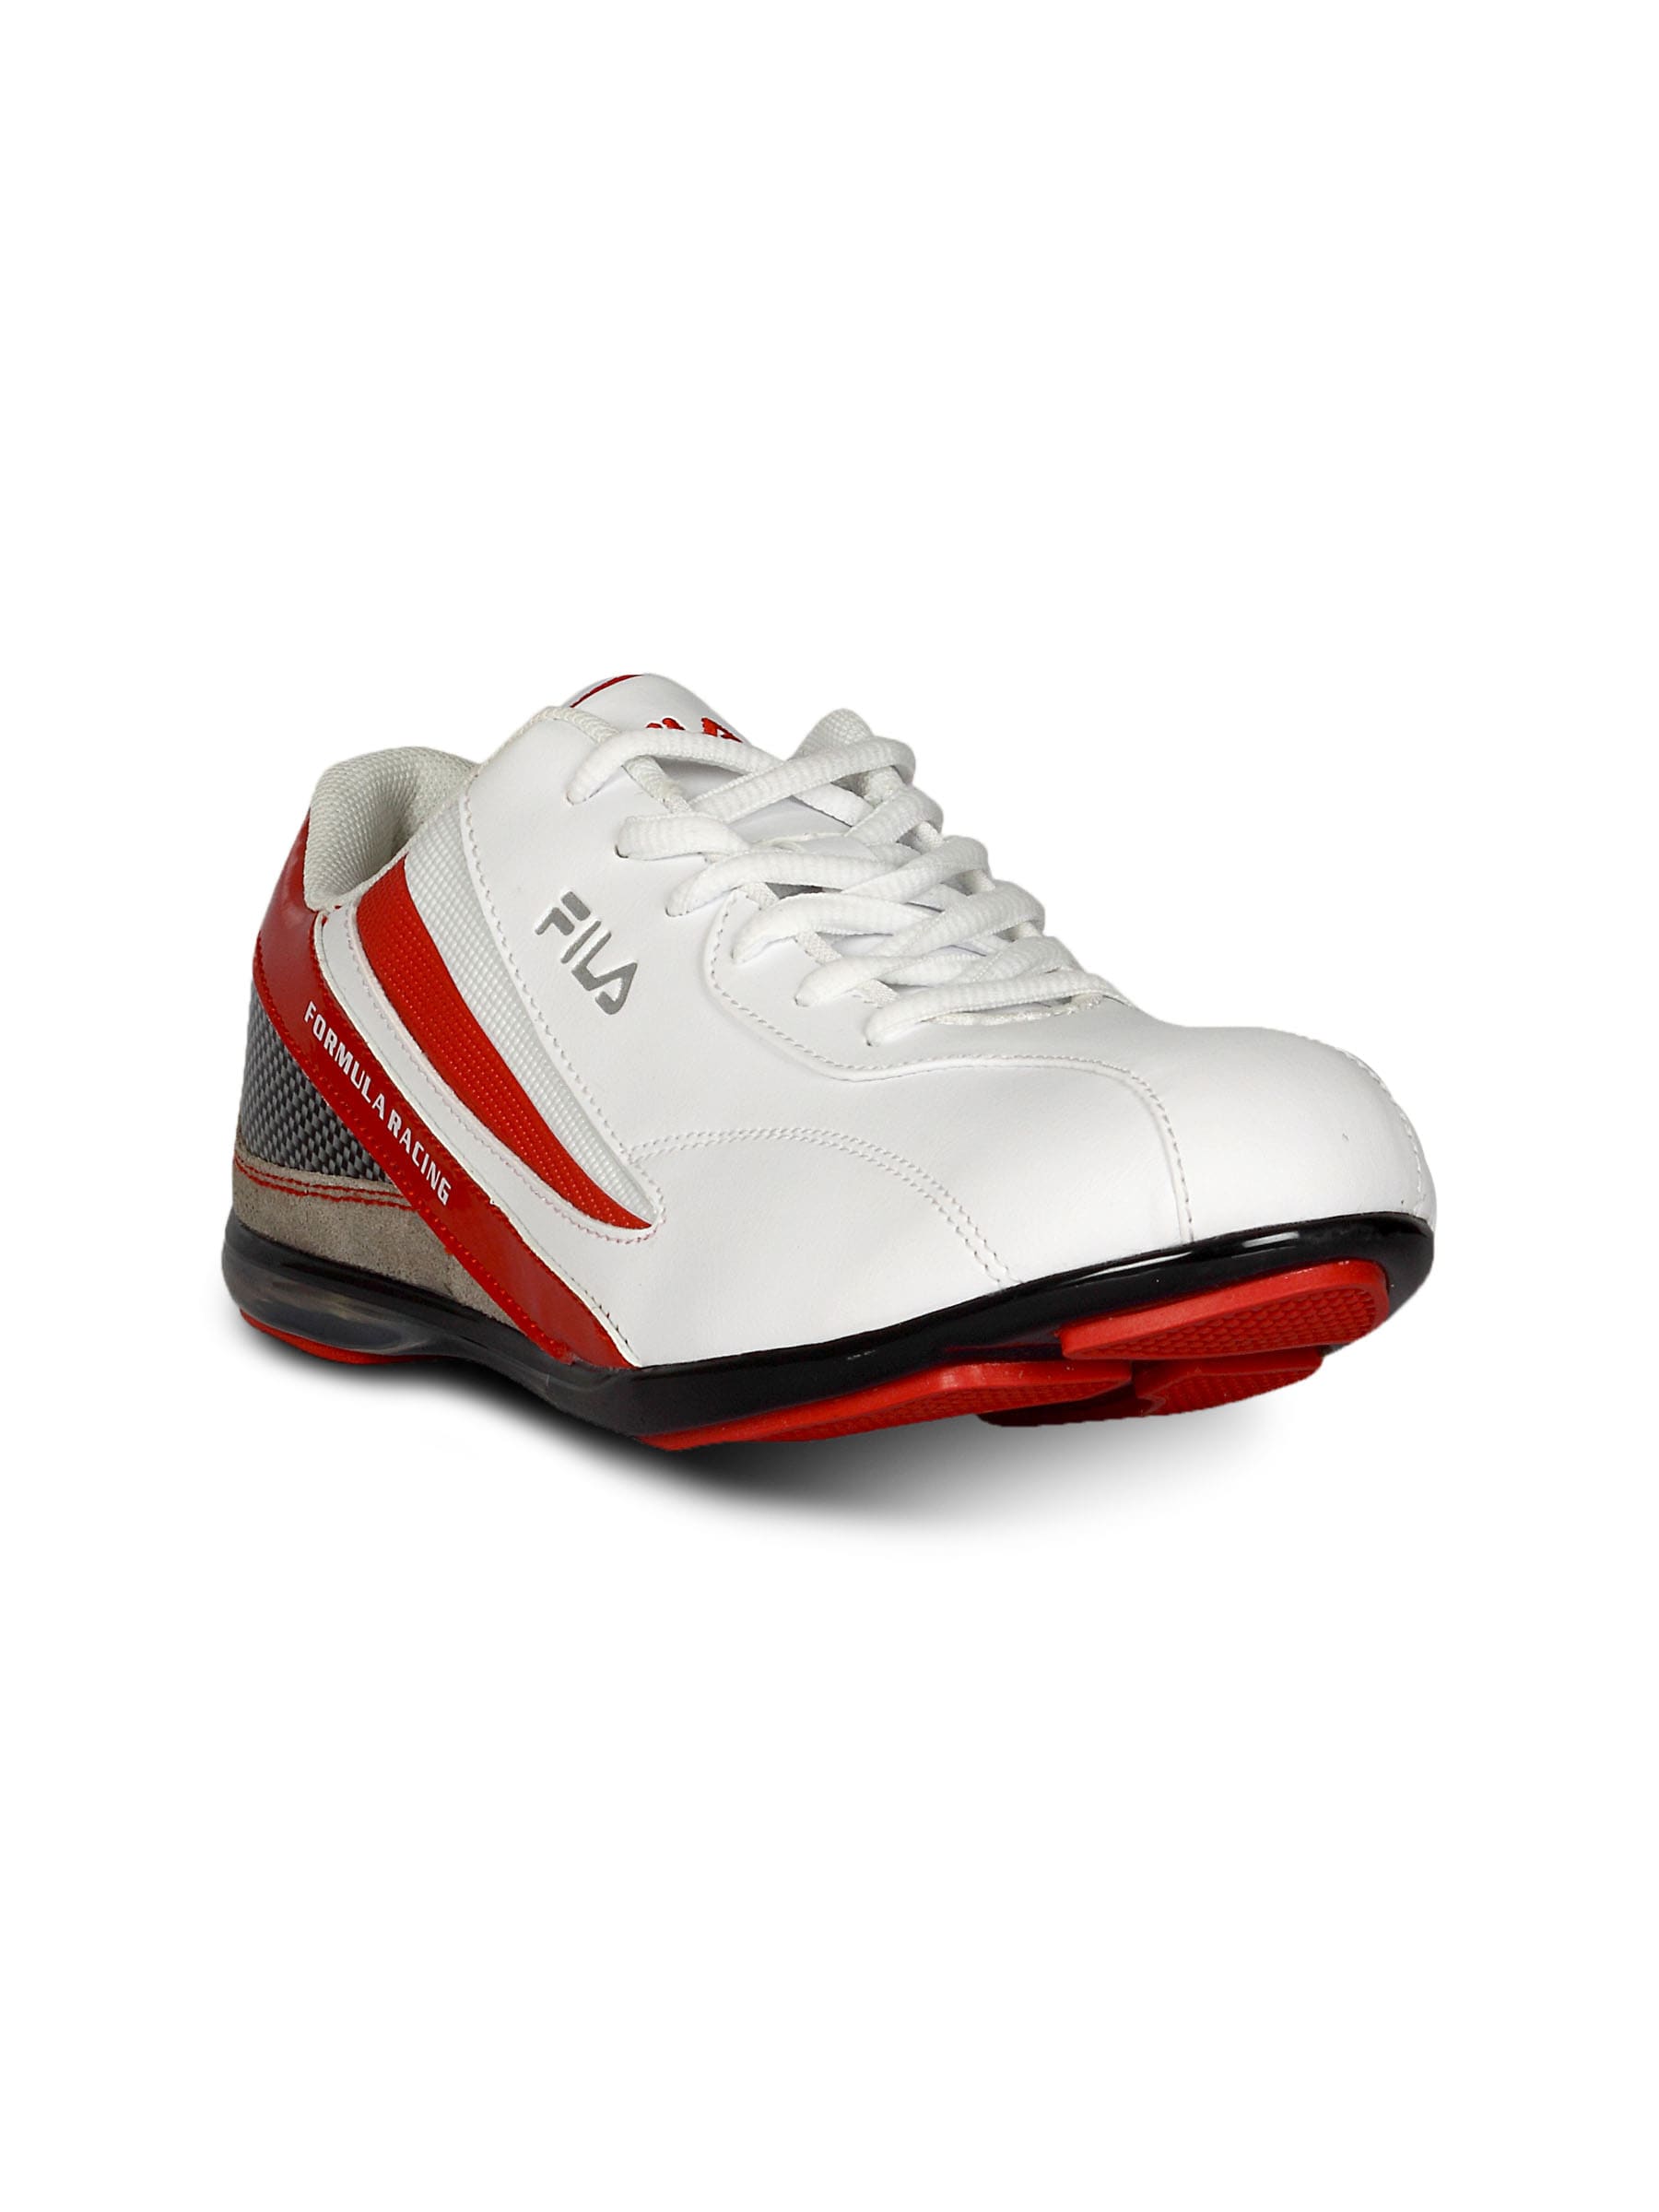 Fila Men's Racing White Red Shoe